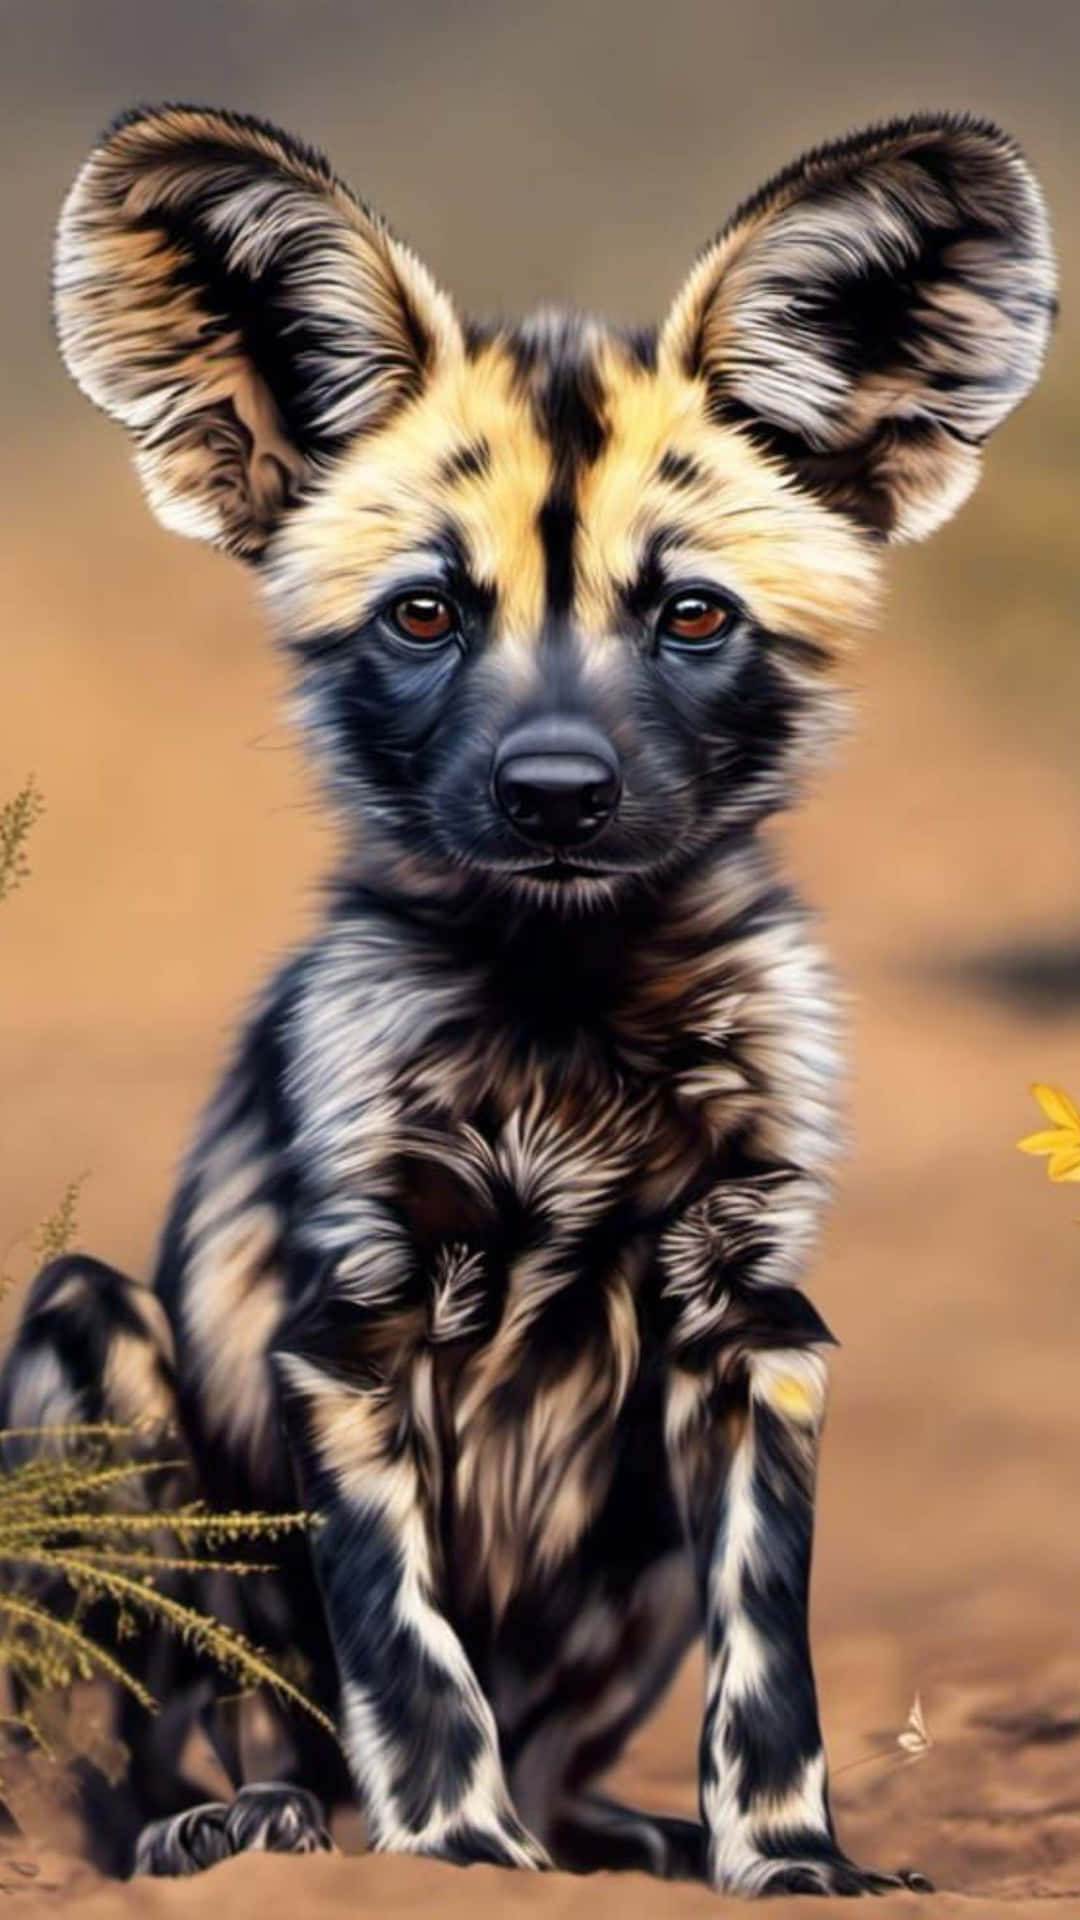 African Wild Dog Portrait Wallpaper